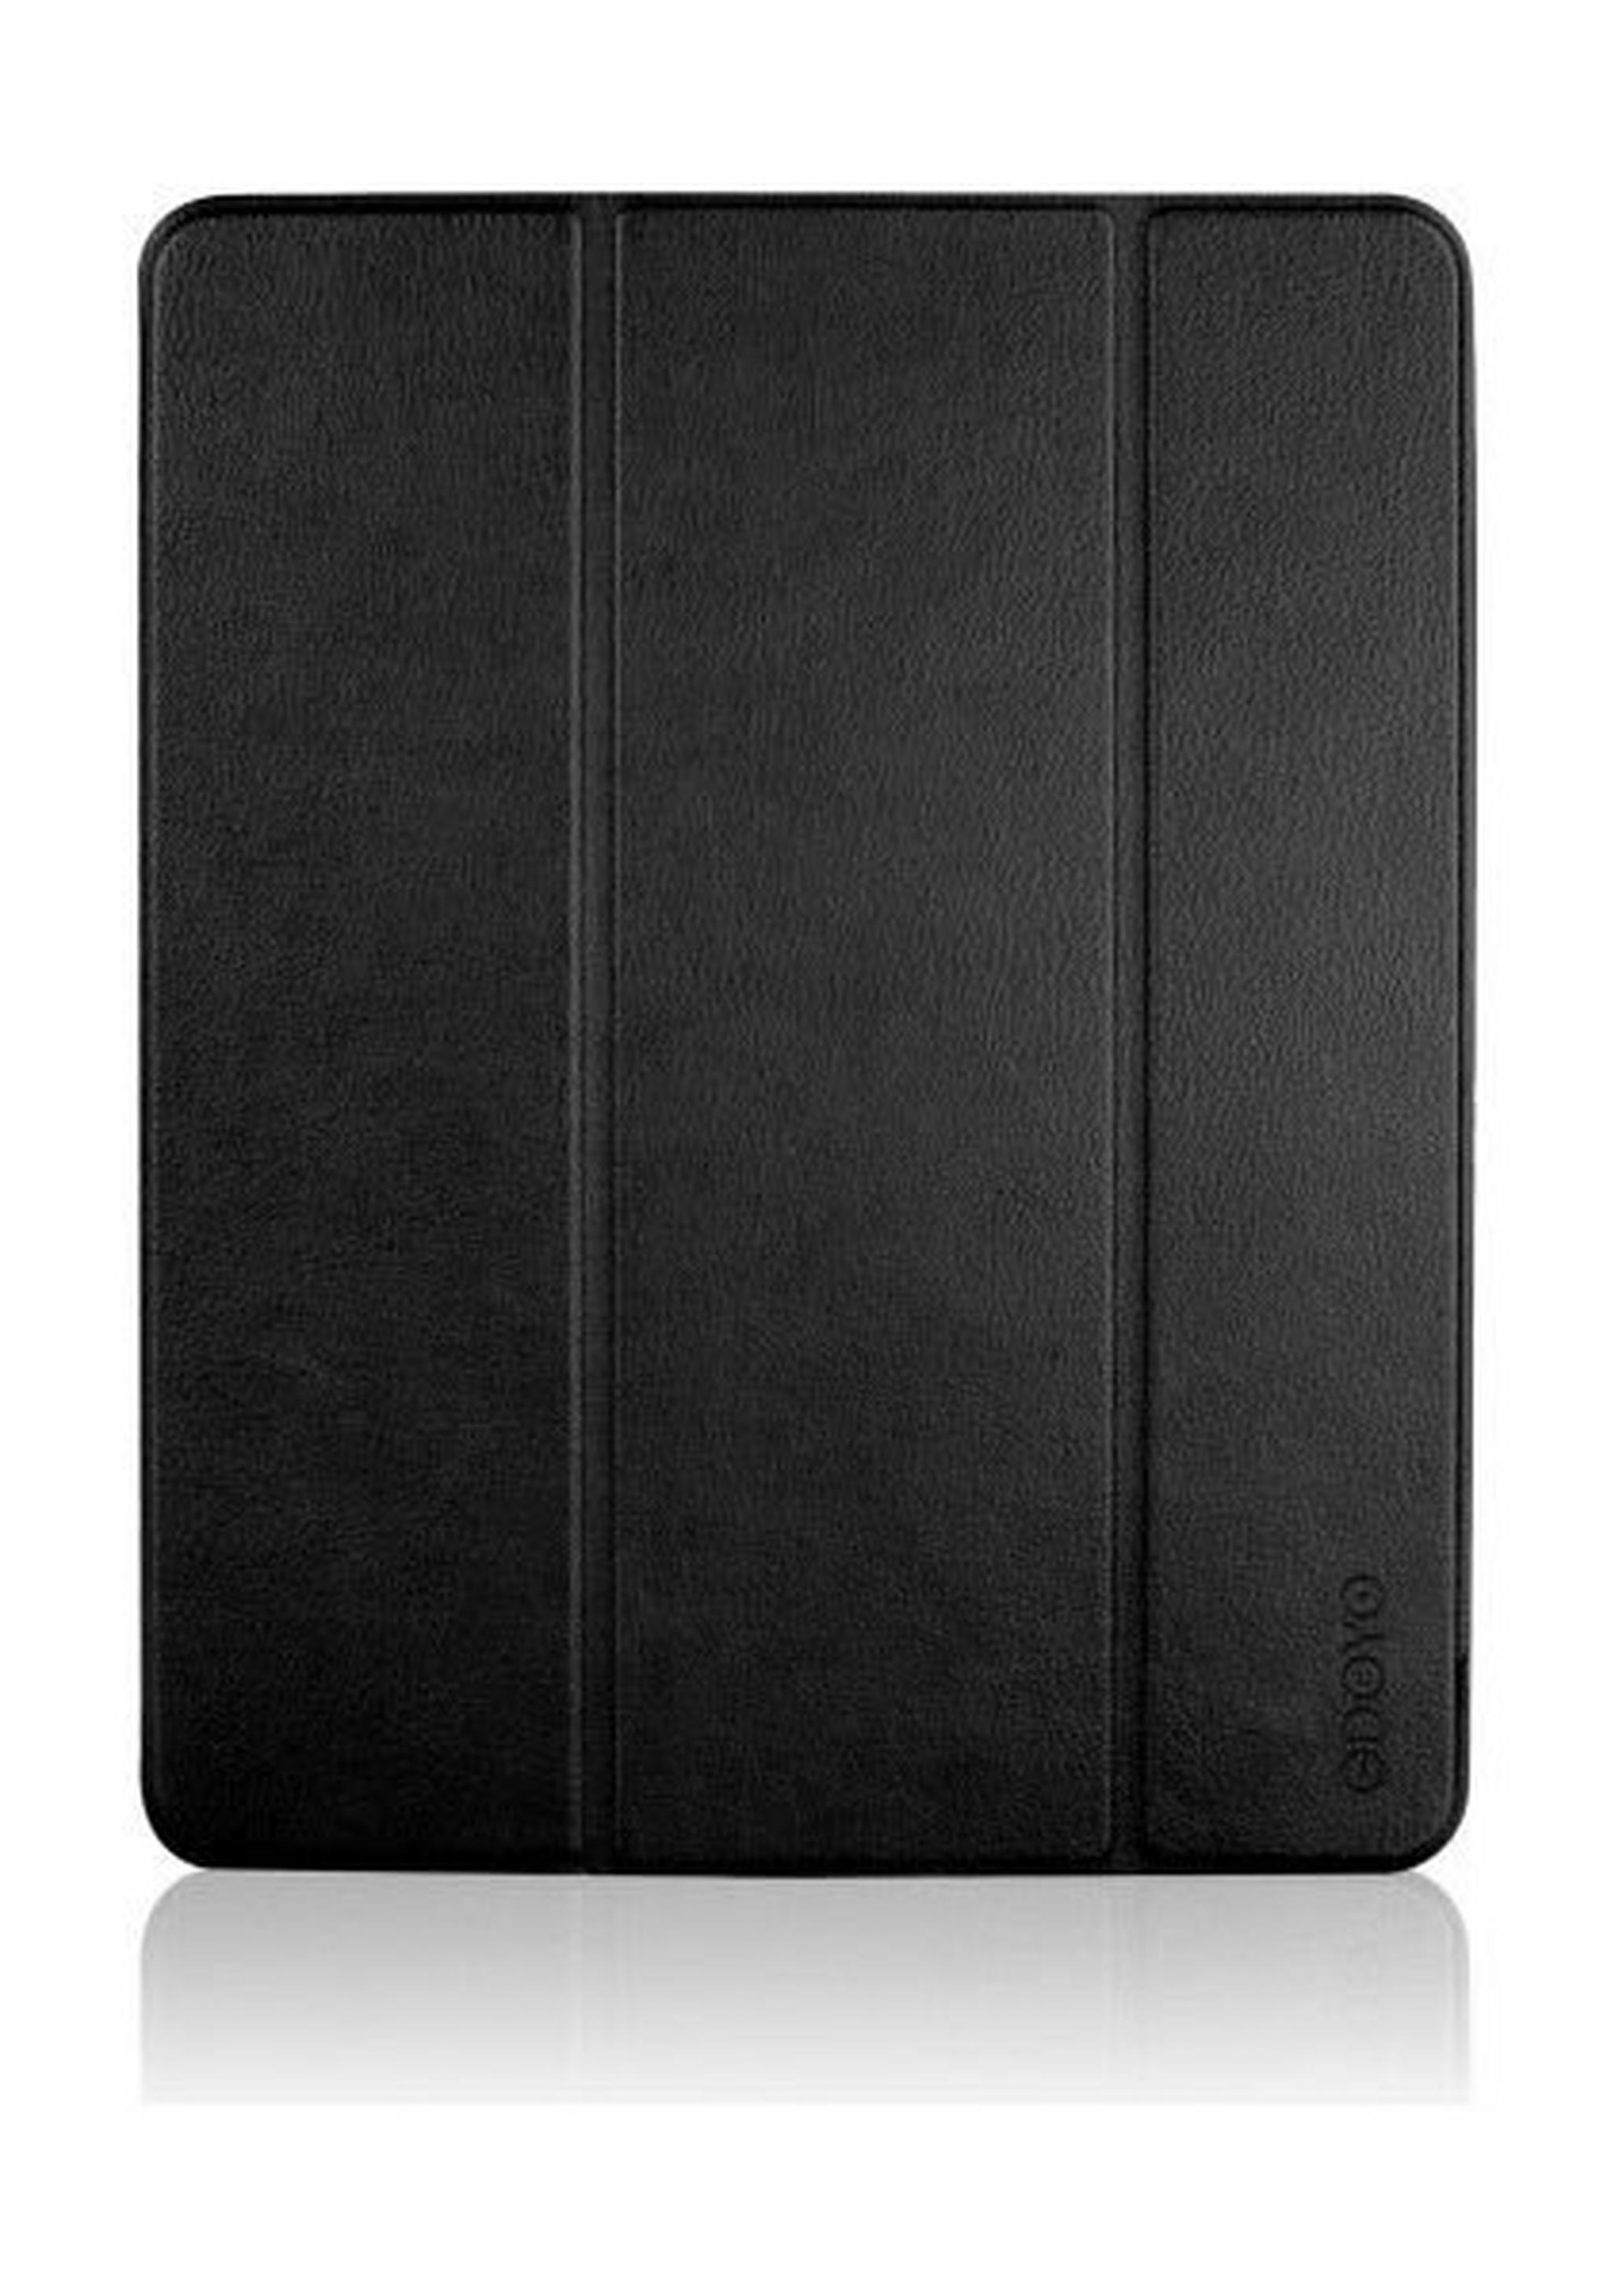 Odoyo AirCoat Protective Case iPad Pro 12.9-inch (PA5229) - Black